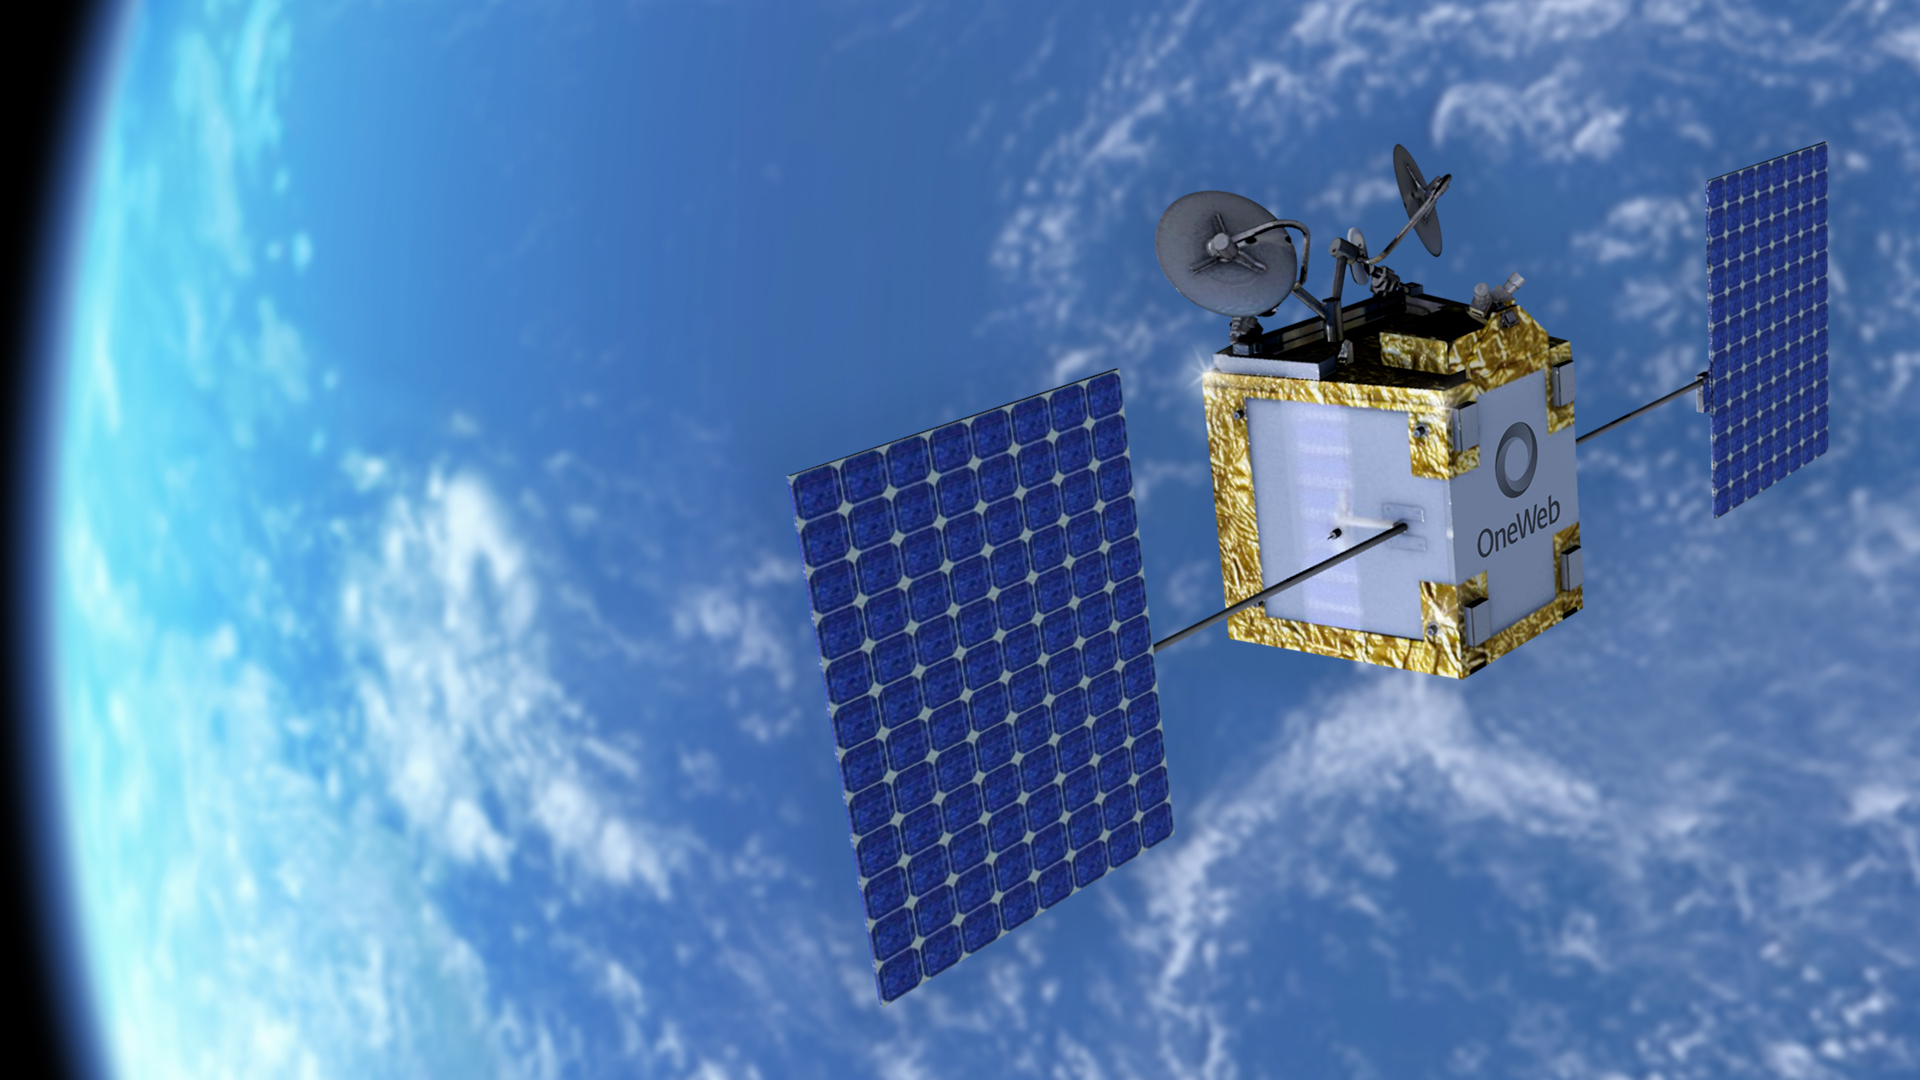 Constellation spatiale : OneWeb embarque sur SpaceX après le forfait de Soyuz